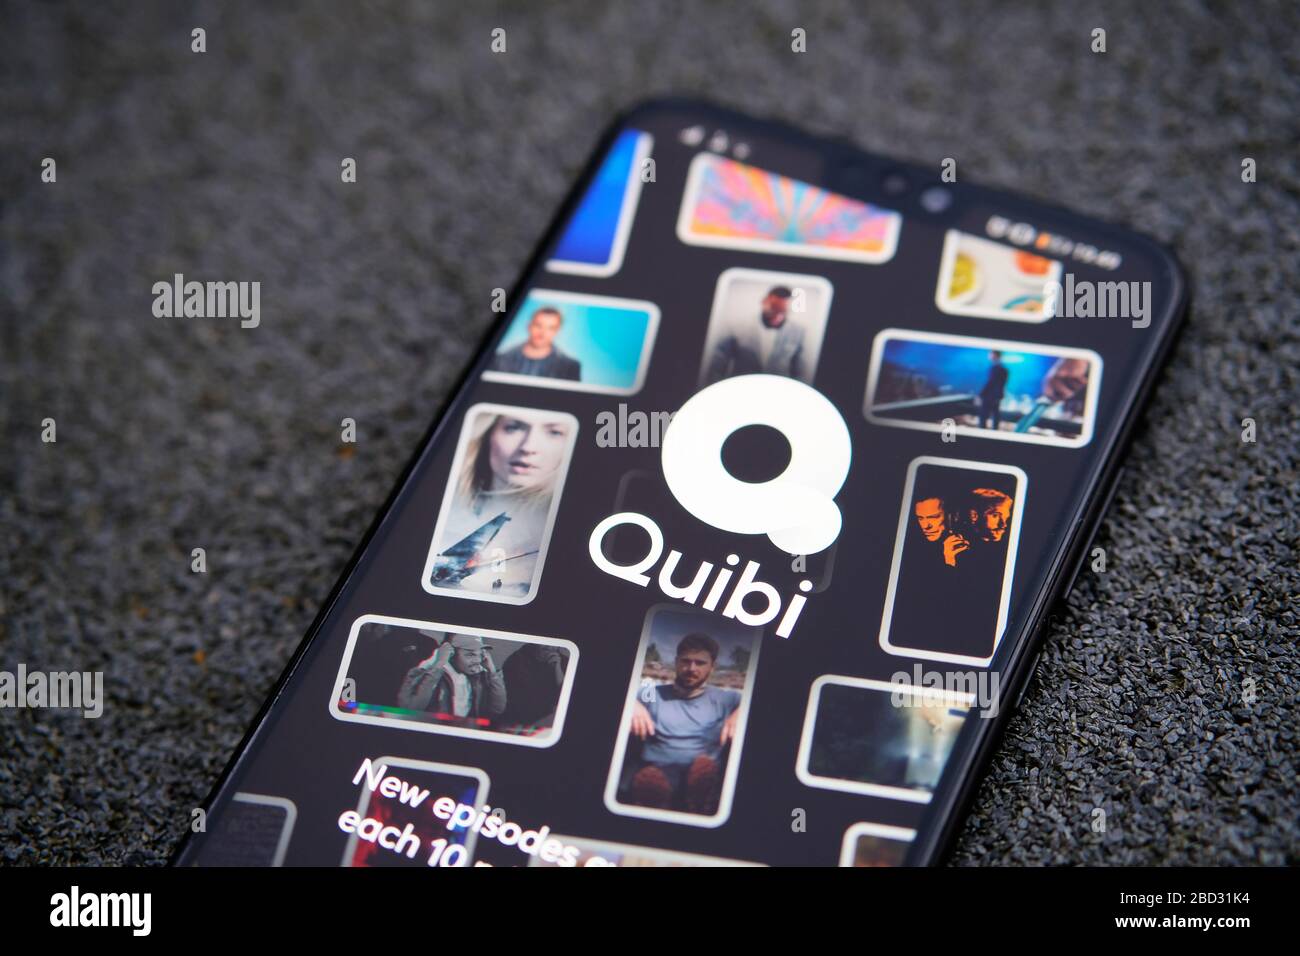 Stone / Royaume-Uni - 6 avril 2020: Quibi app connexion écran sur le smartphone tenir dans la main. Quibi est une nouvelle plate-forme de diffusion vidéo courte, comper Banque D'Images